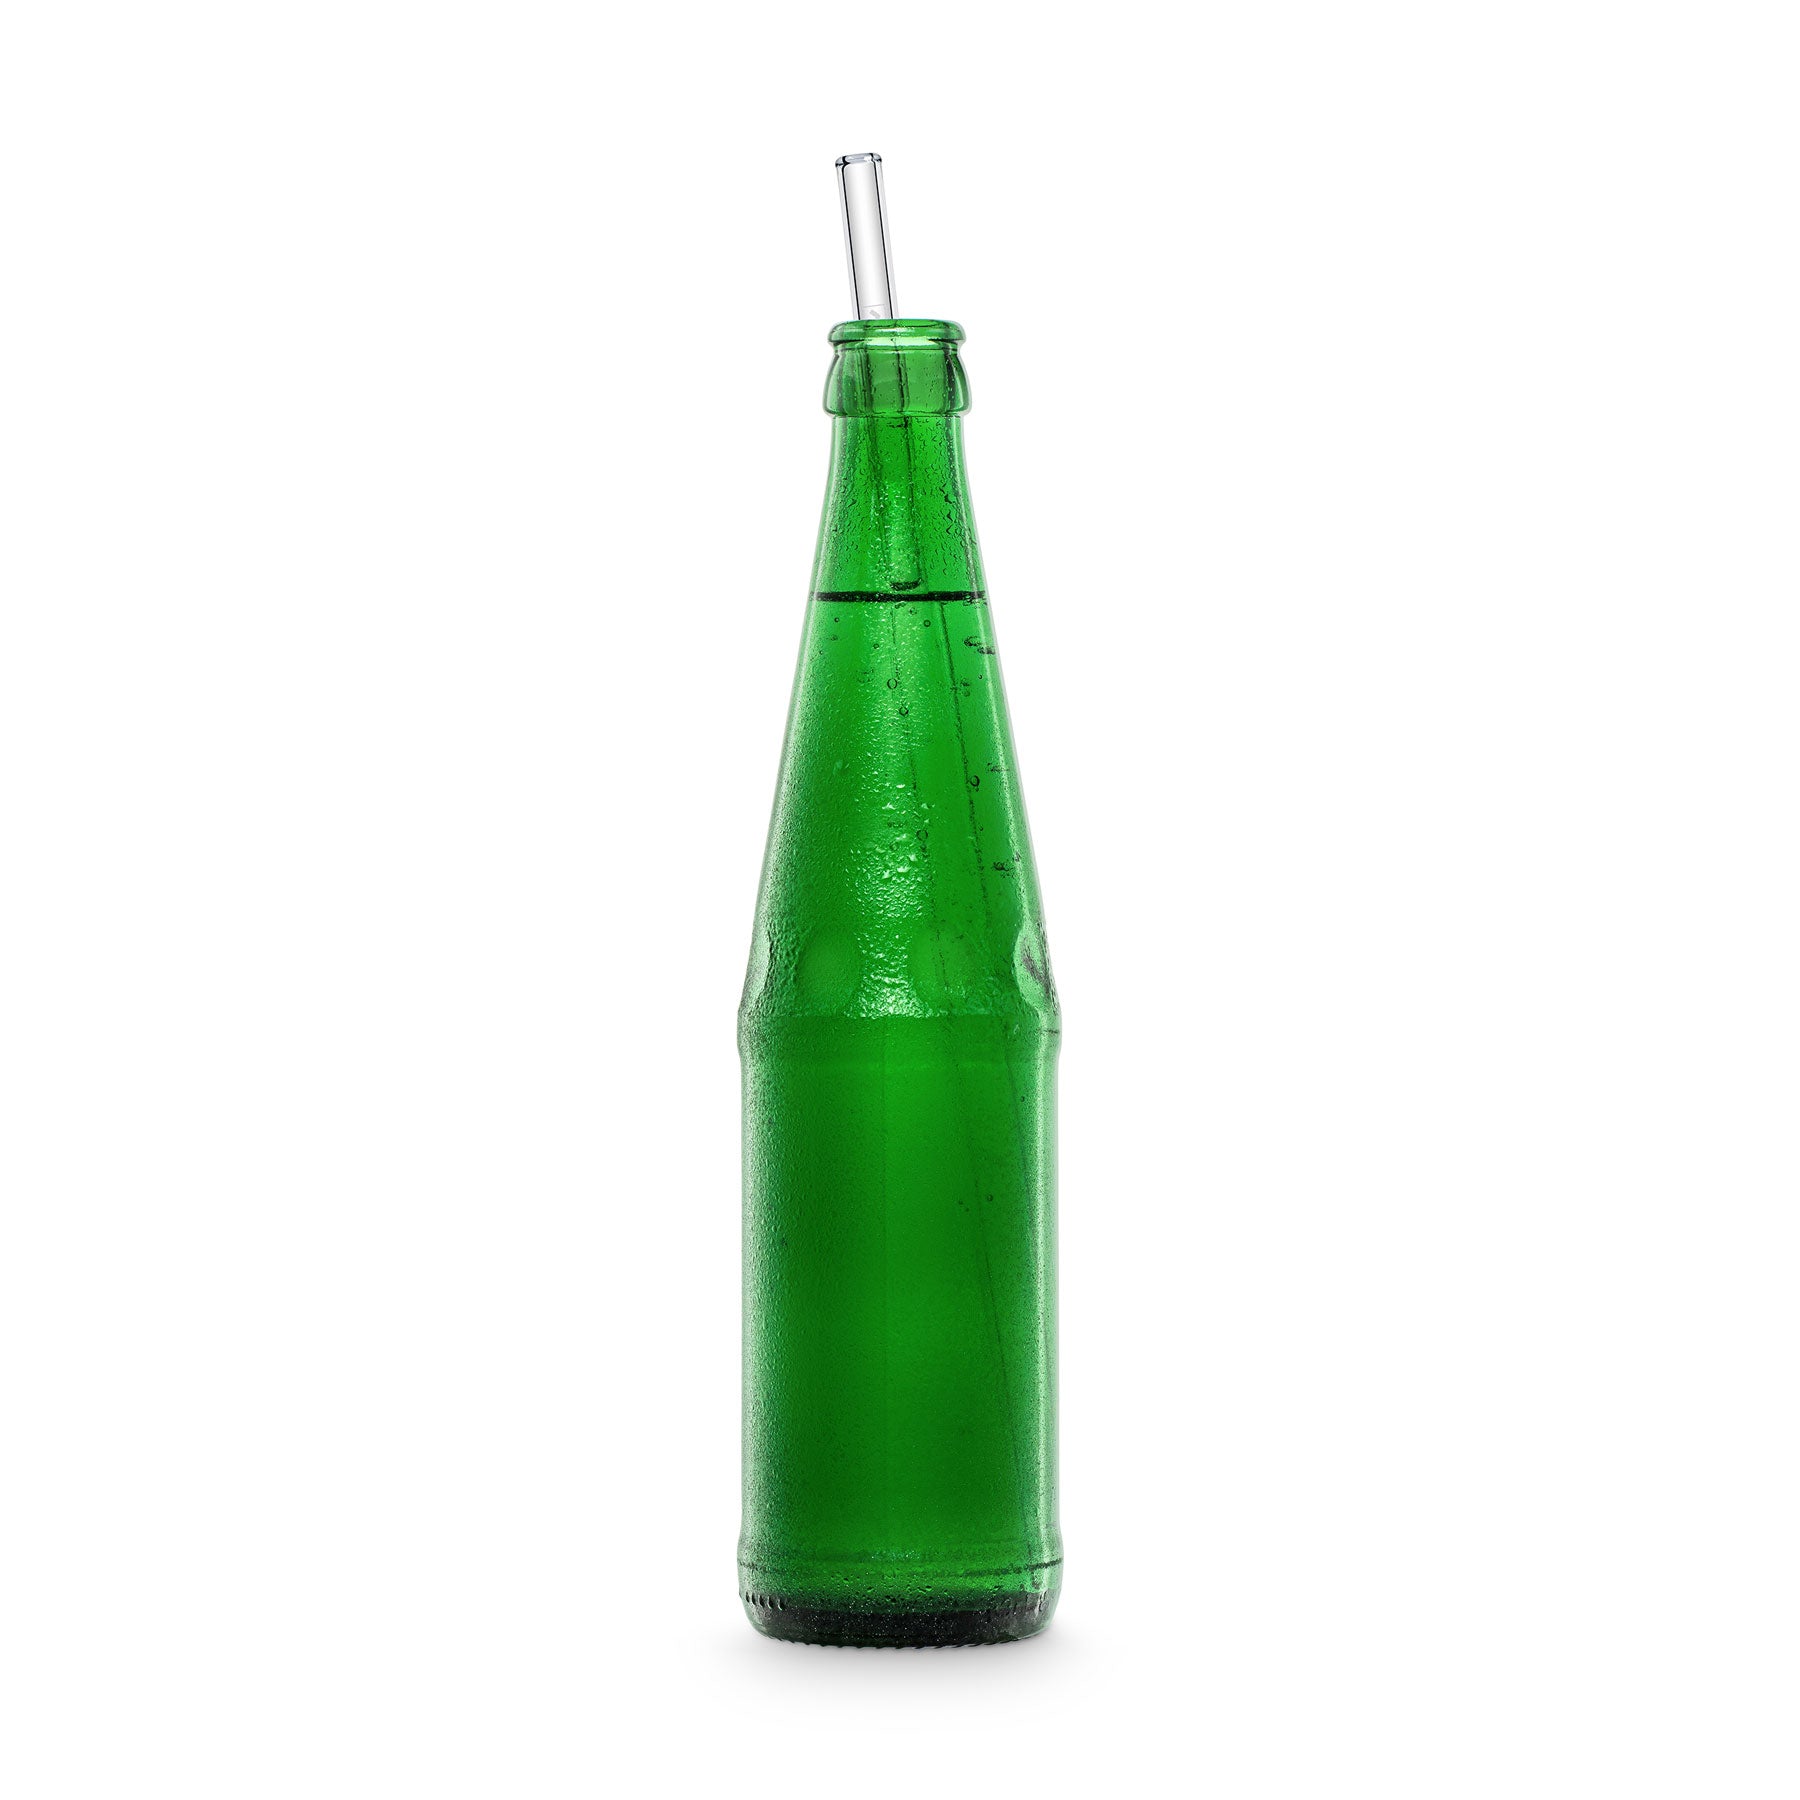 https://cdn.shopify.com/s/files/1/0504/0059/2044/files/Sprite-Limo-30cm-glashhalme-lang-fur-grosse-flaschen-glass-straws-bottles-HALM-30cm.jpg?v=1613772406